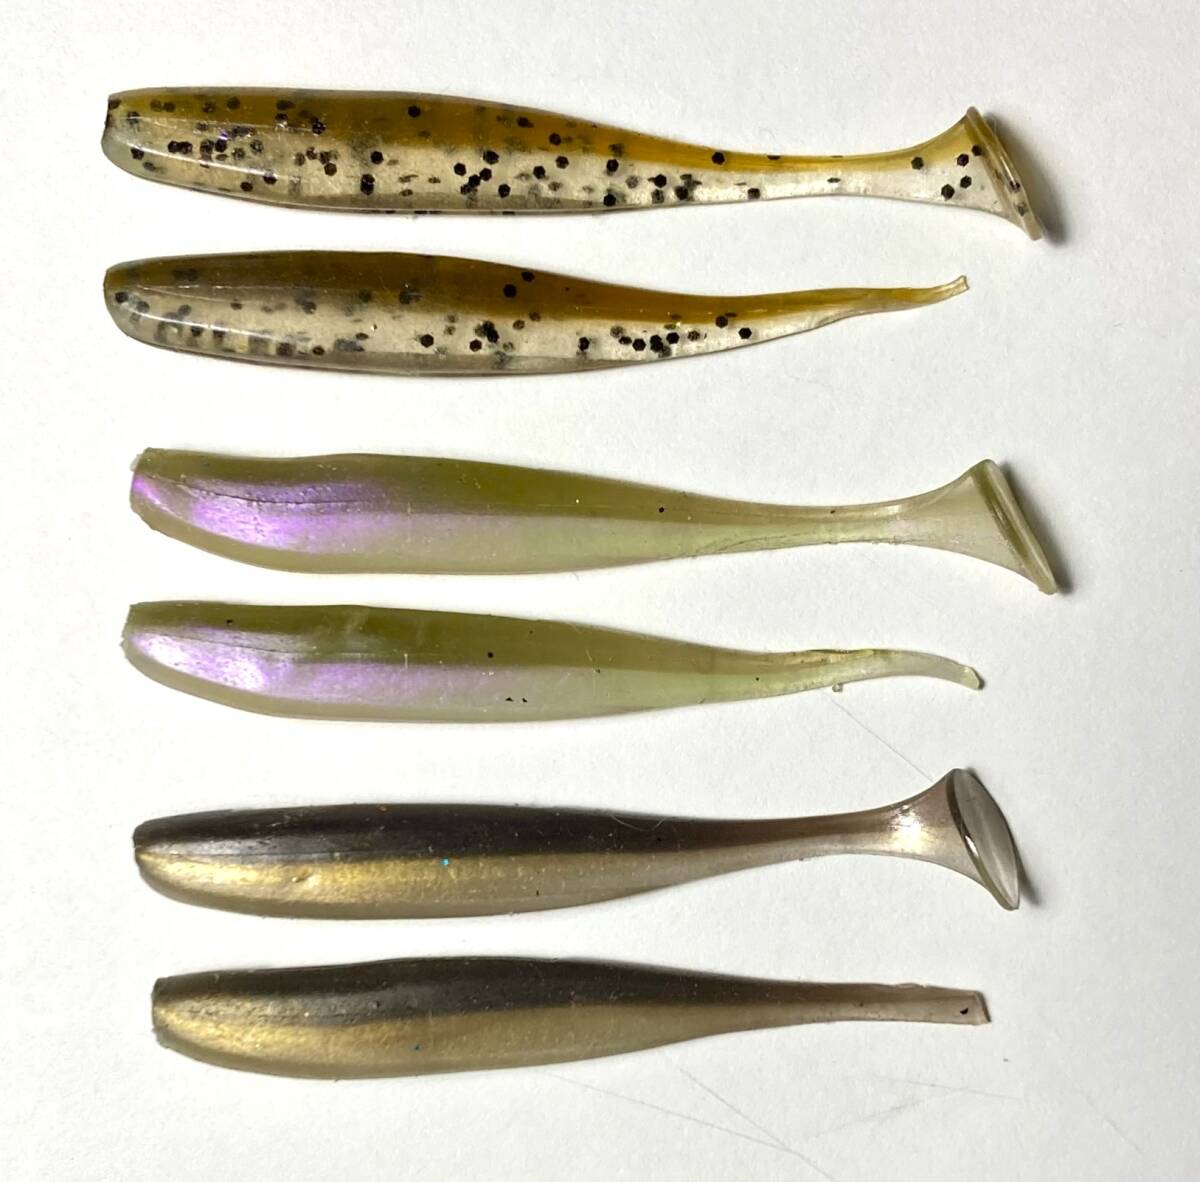 Evo.2-43 GoWestミニスピナーベイト1/8oz（Double Willow Leaf Blade）【リアブレード #3 Premium Gold】_プレゼントするワームのテールカット推奨